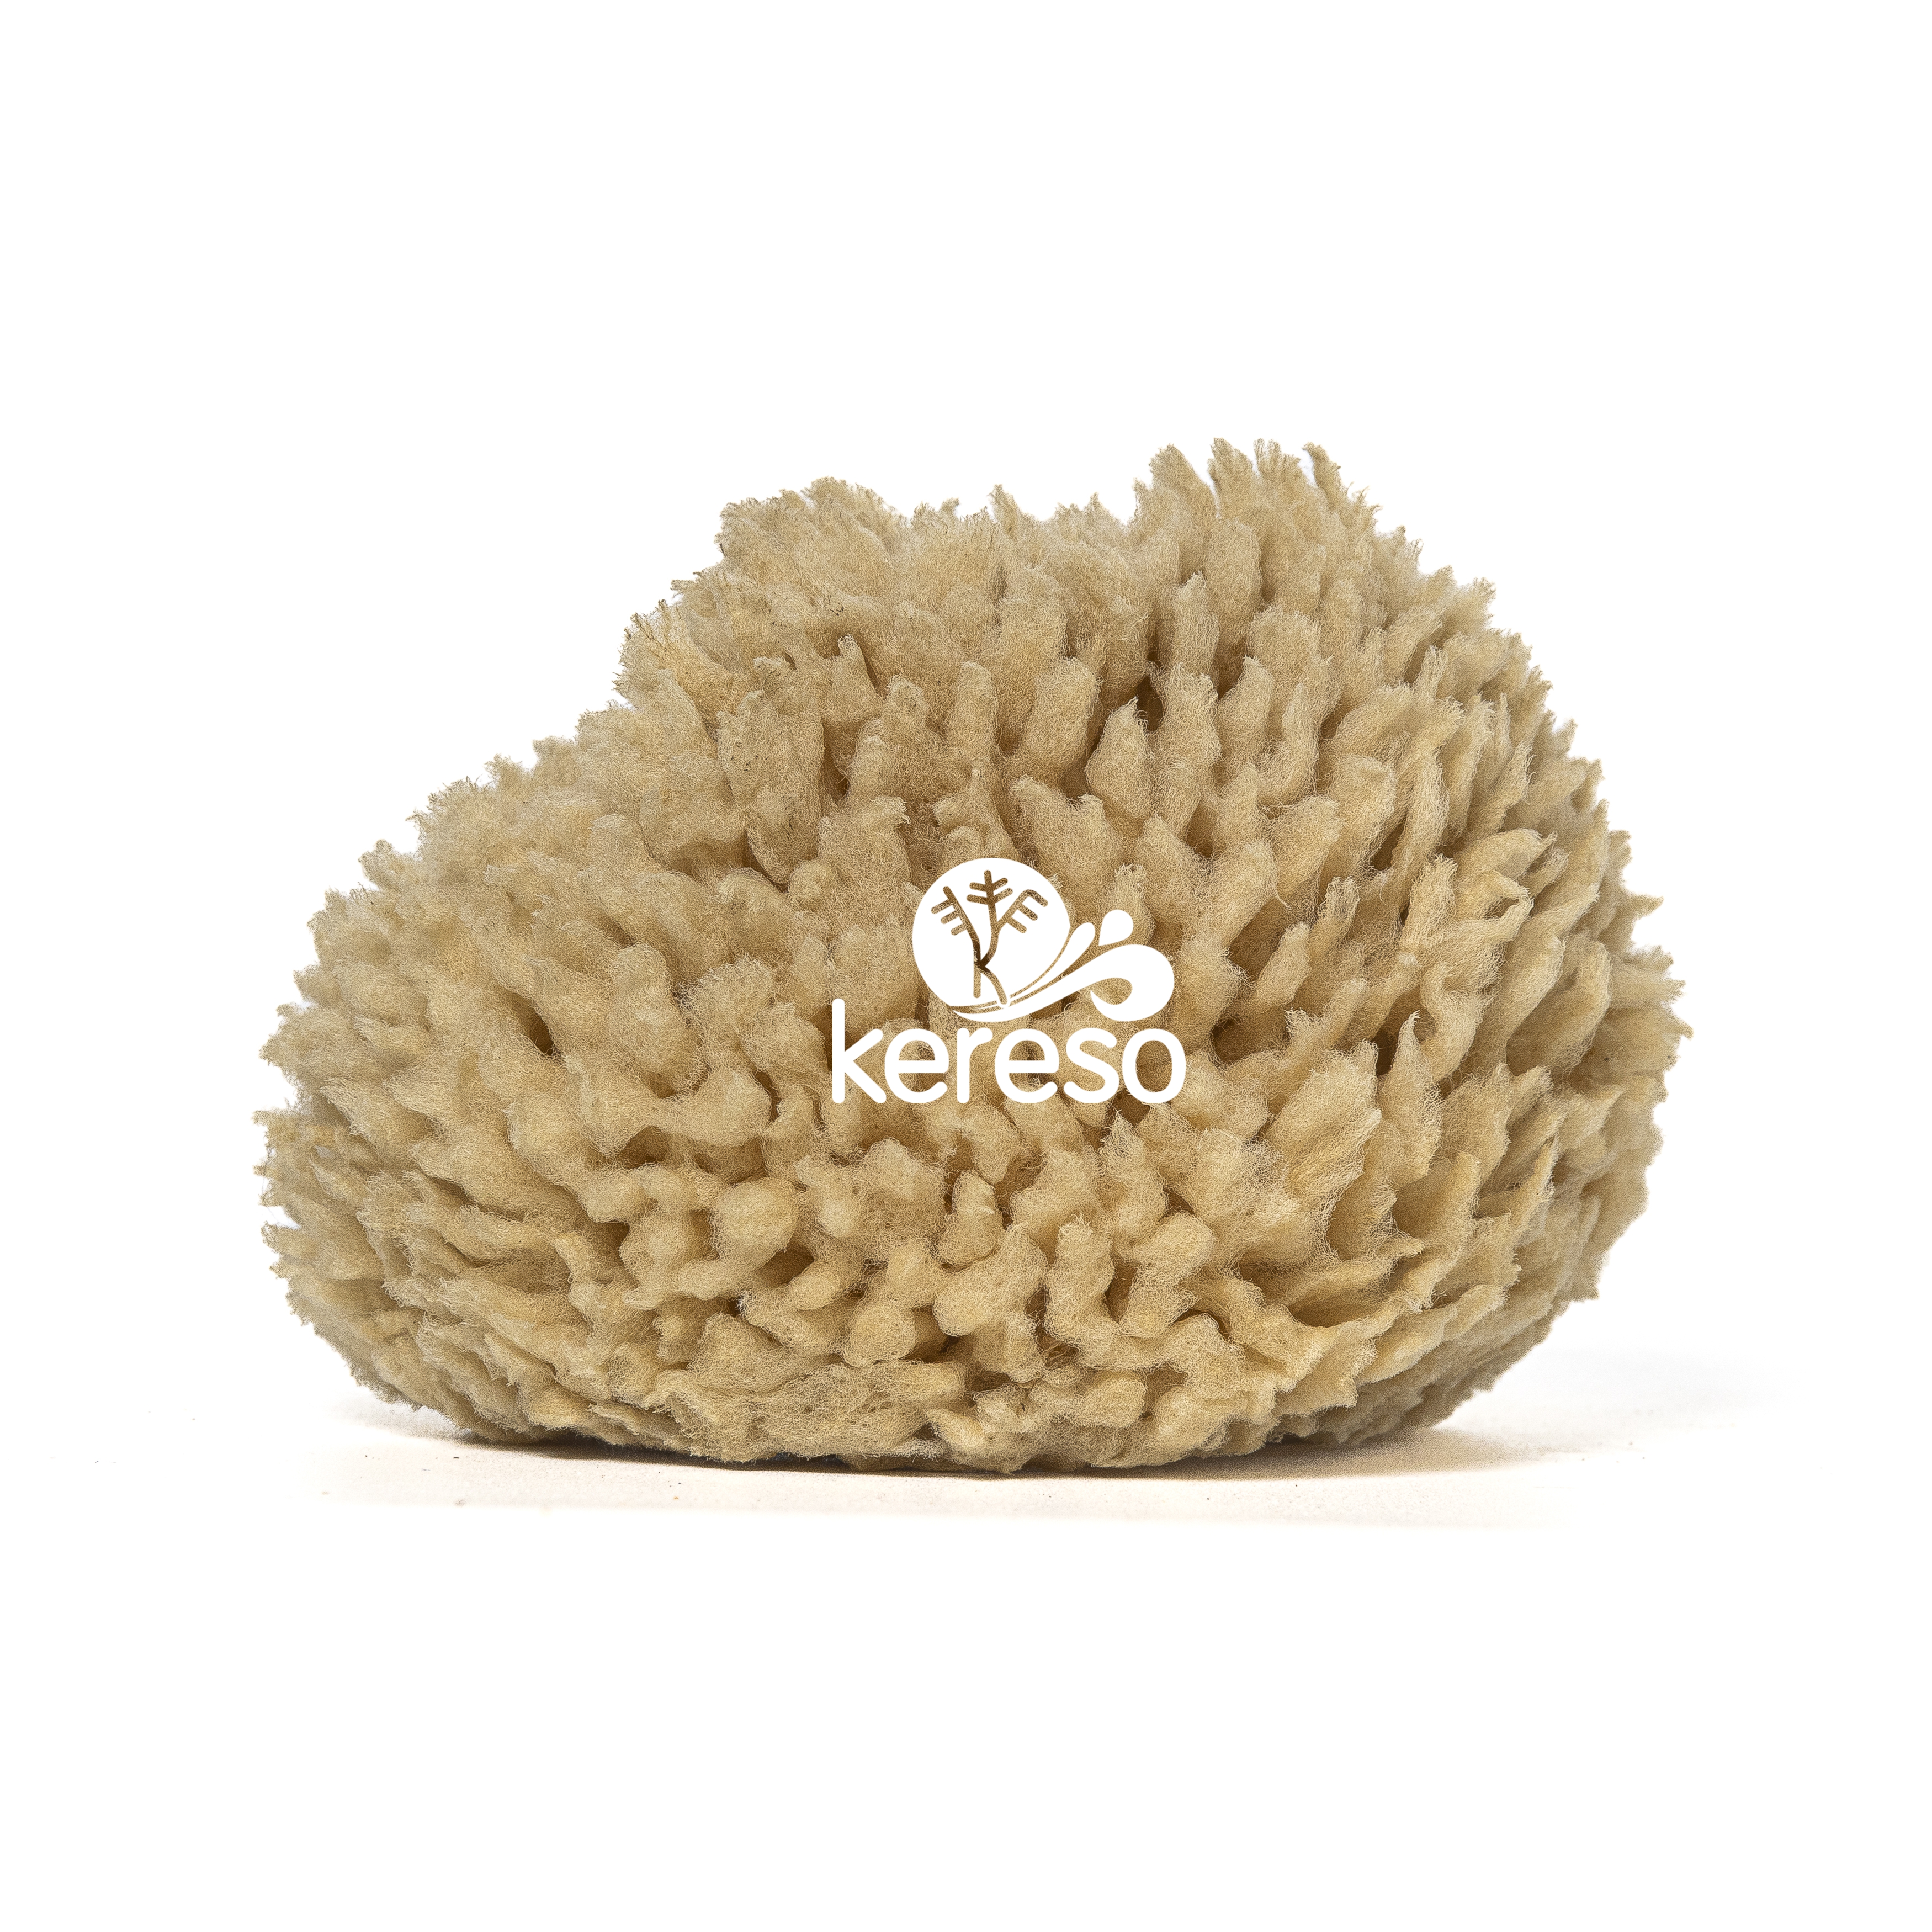 wool sea sponge